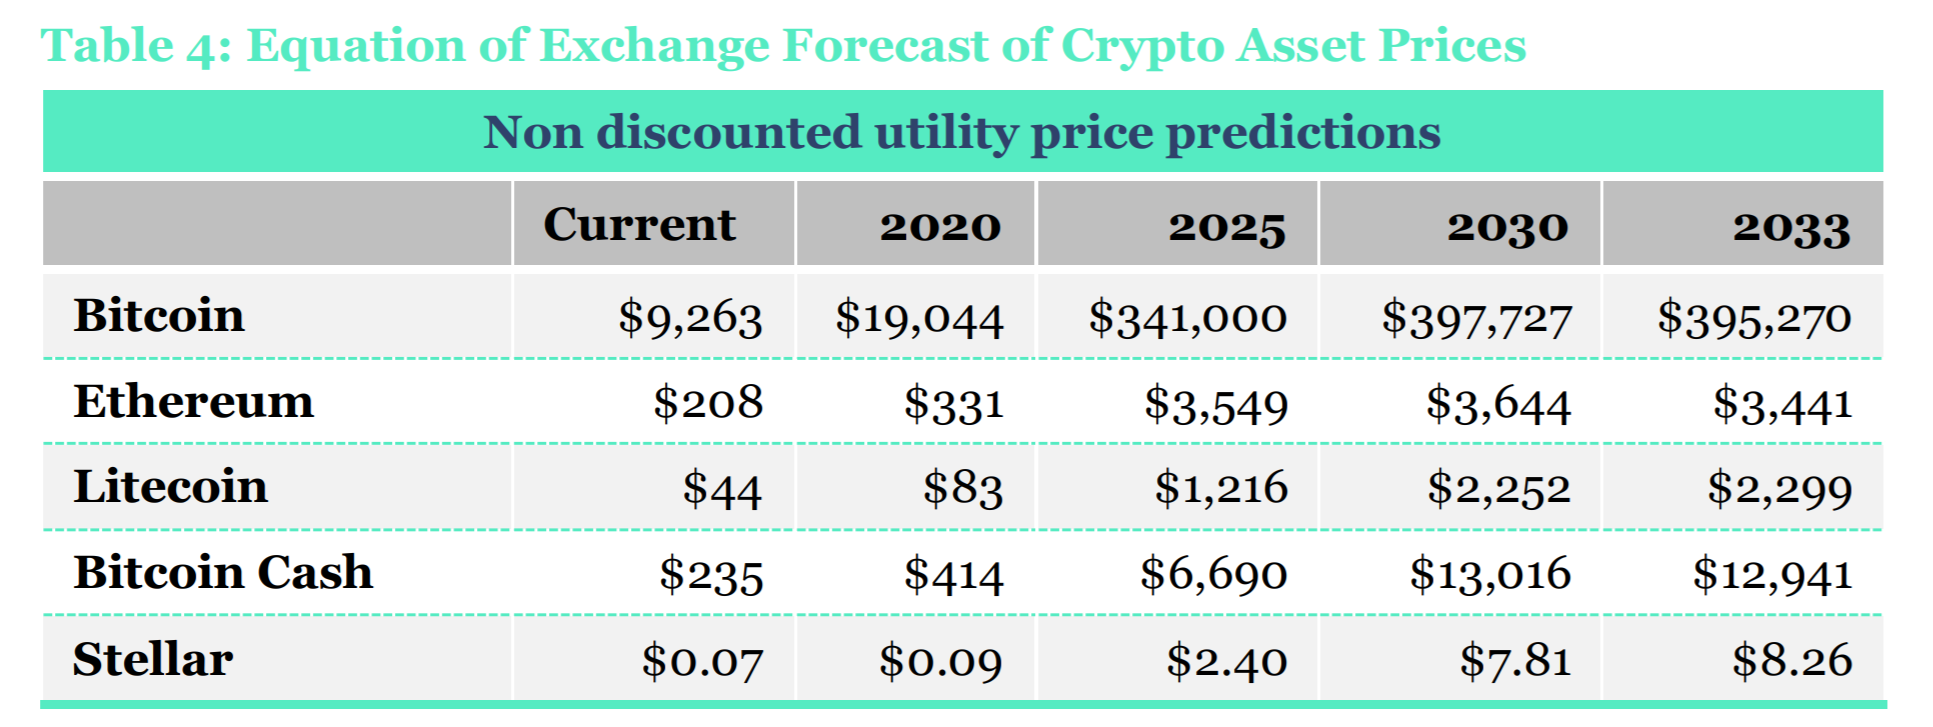 Bitcoin (BTC) potrebbe superare i 66K USD nel 2021 e i 400K USD entro il 2030